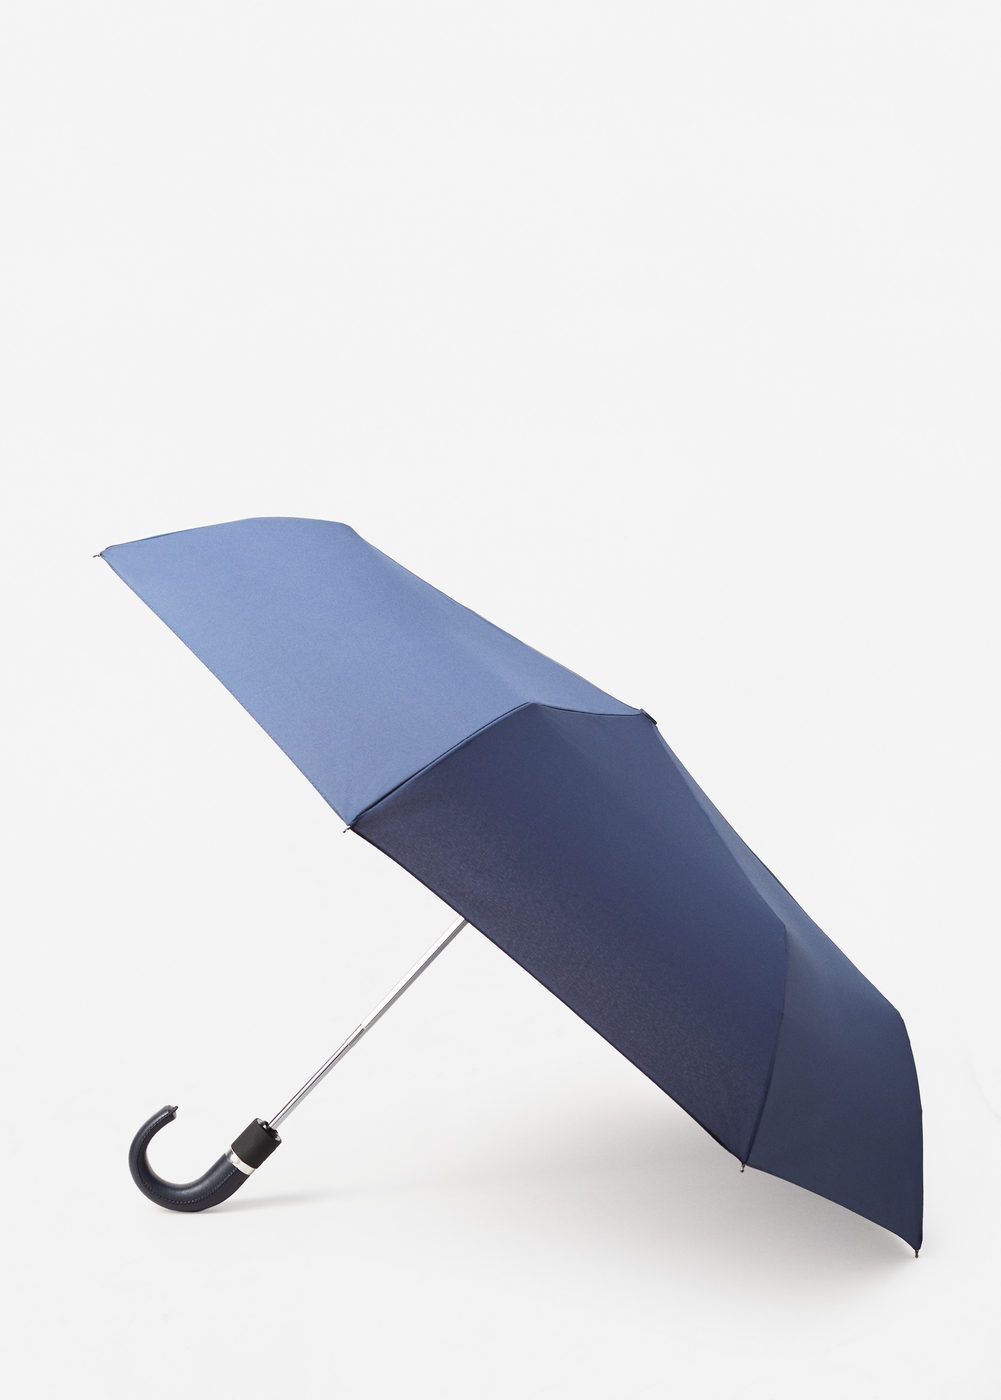 Mango Összecsukható esernyő 2016.12.22 fotója